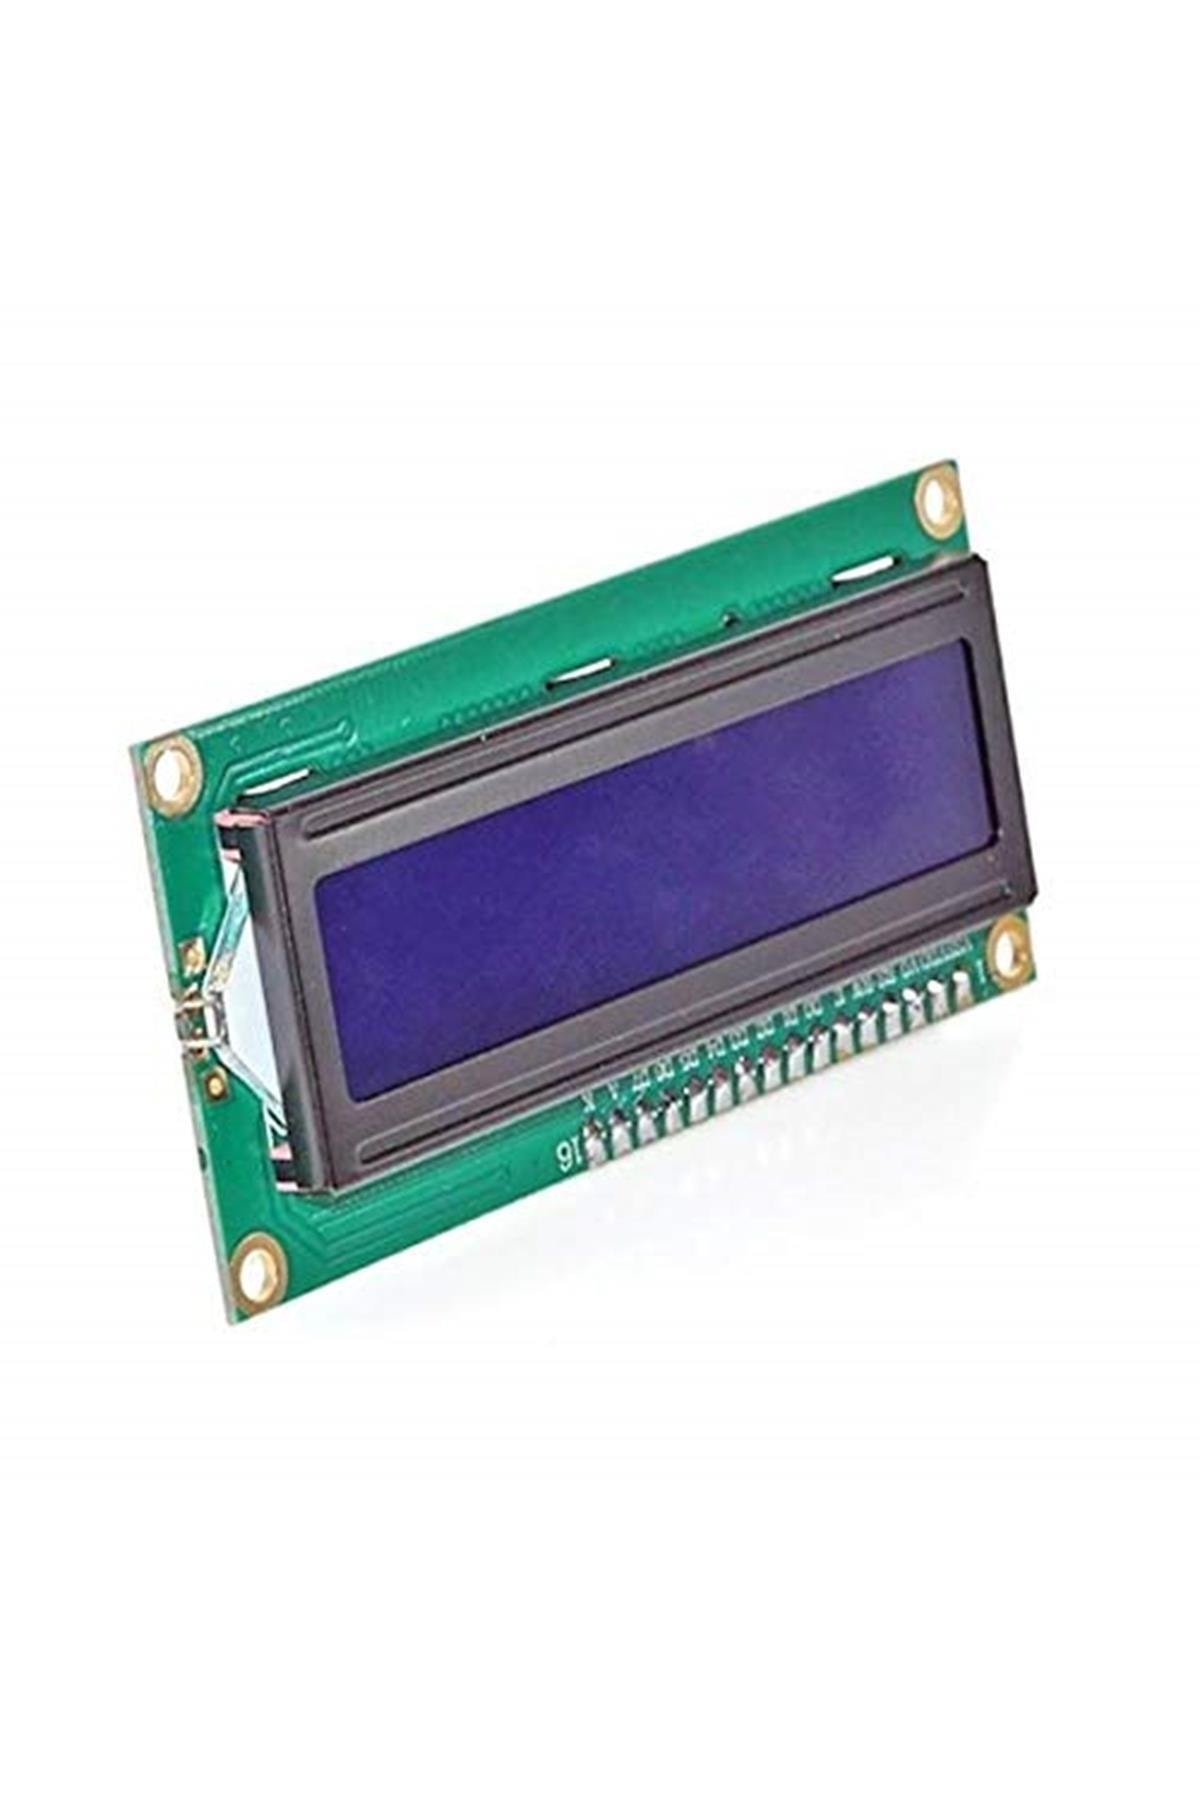 Robotoys Lcd1602 I2c Lcd Ekran Modülü (mavi) Arduino Projeleri Ile Uyumlu